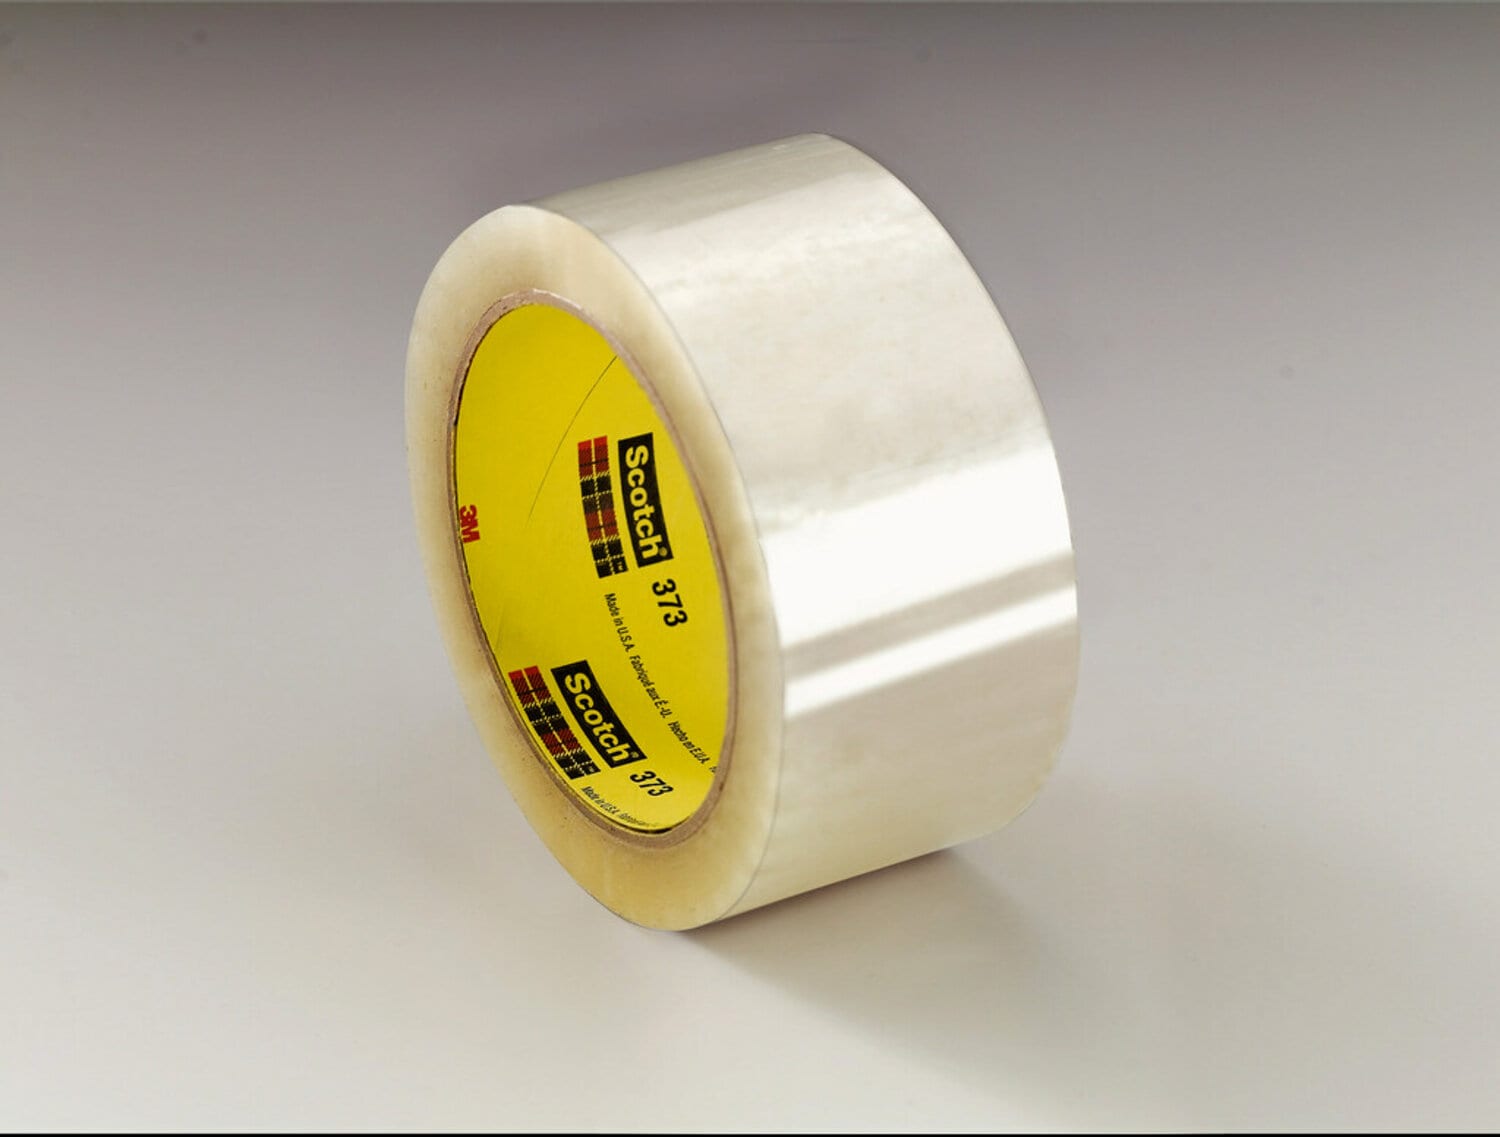 7100179500 - Scotch Custom Printed Box Sealing Tape 373CP, Clear, 72 mm x 50 m,
24/Case